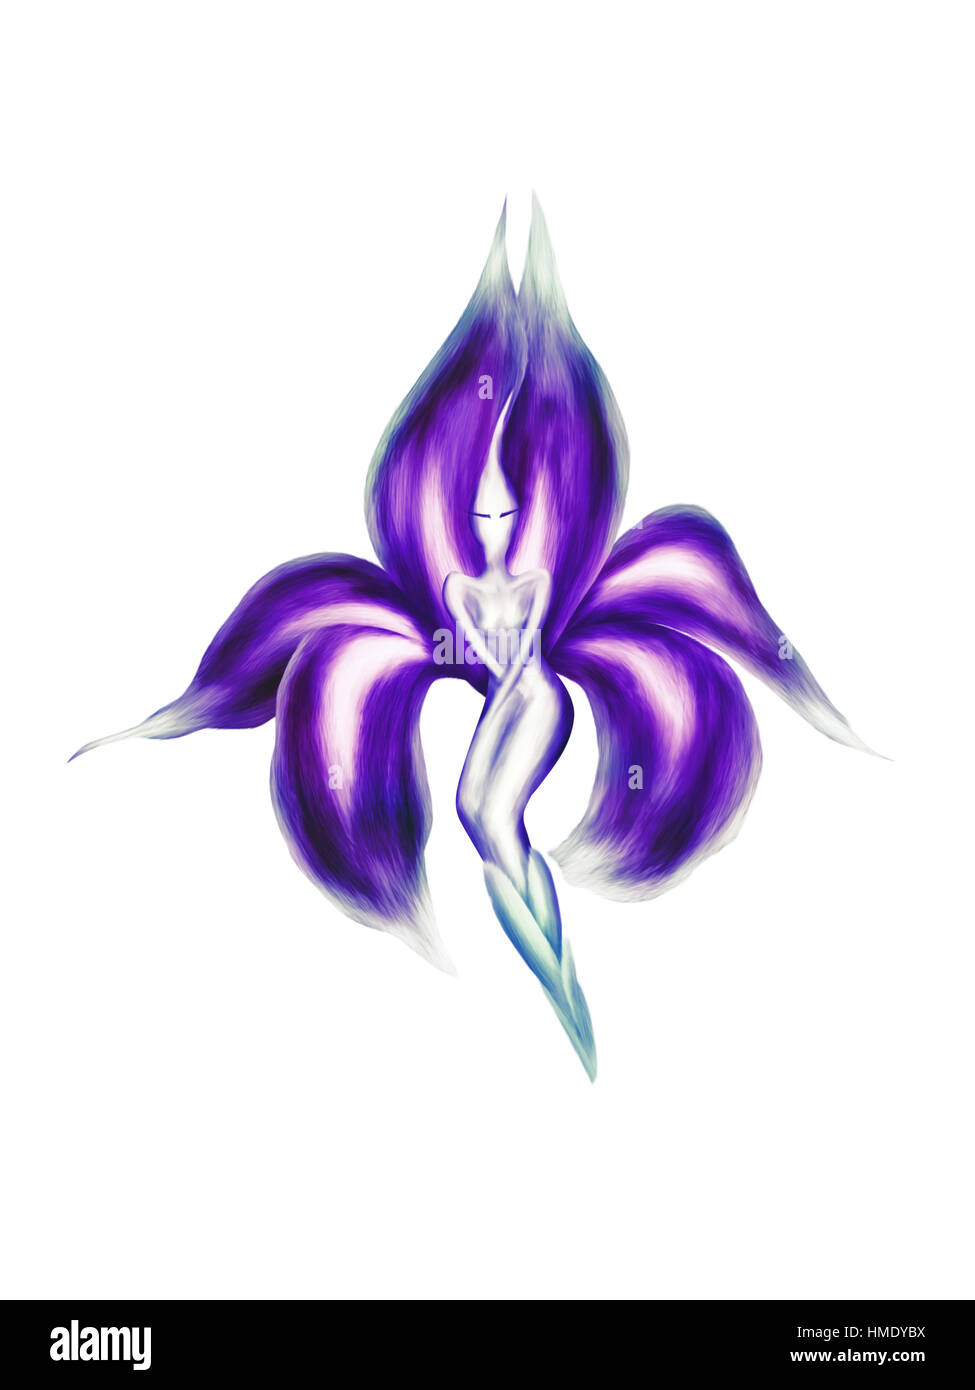 Artistico illustrazione astratta di una bella dancing lady iris esotico fiore fata con petali viola isolato su sfondo bianco Foto Stock